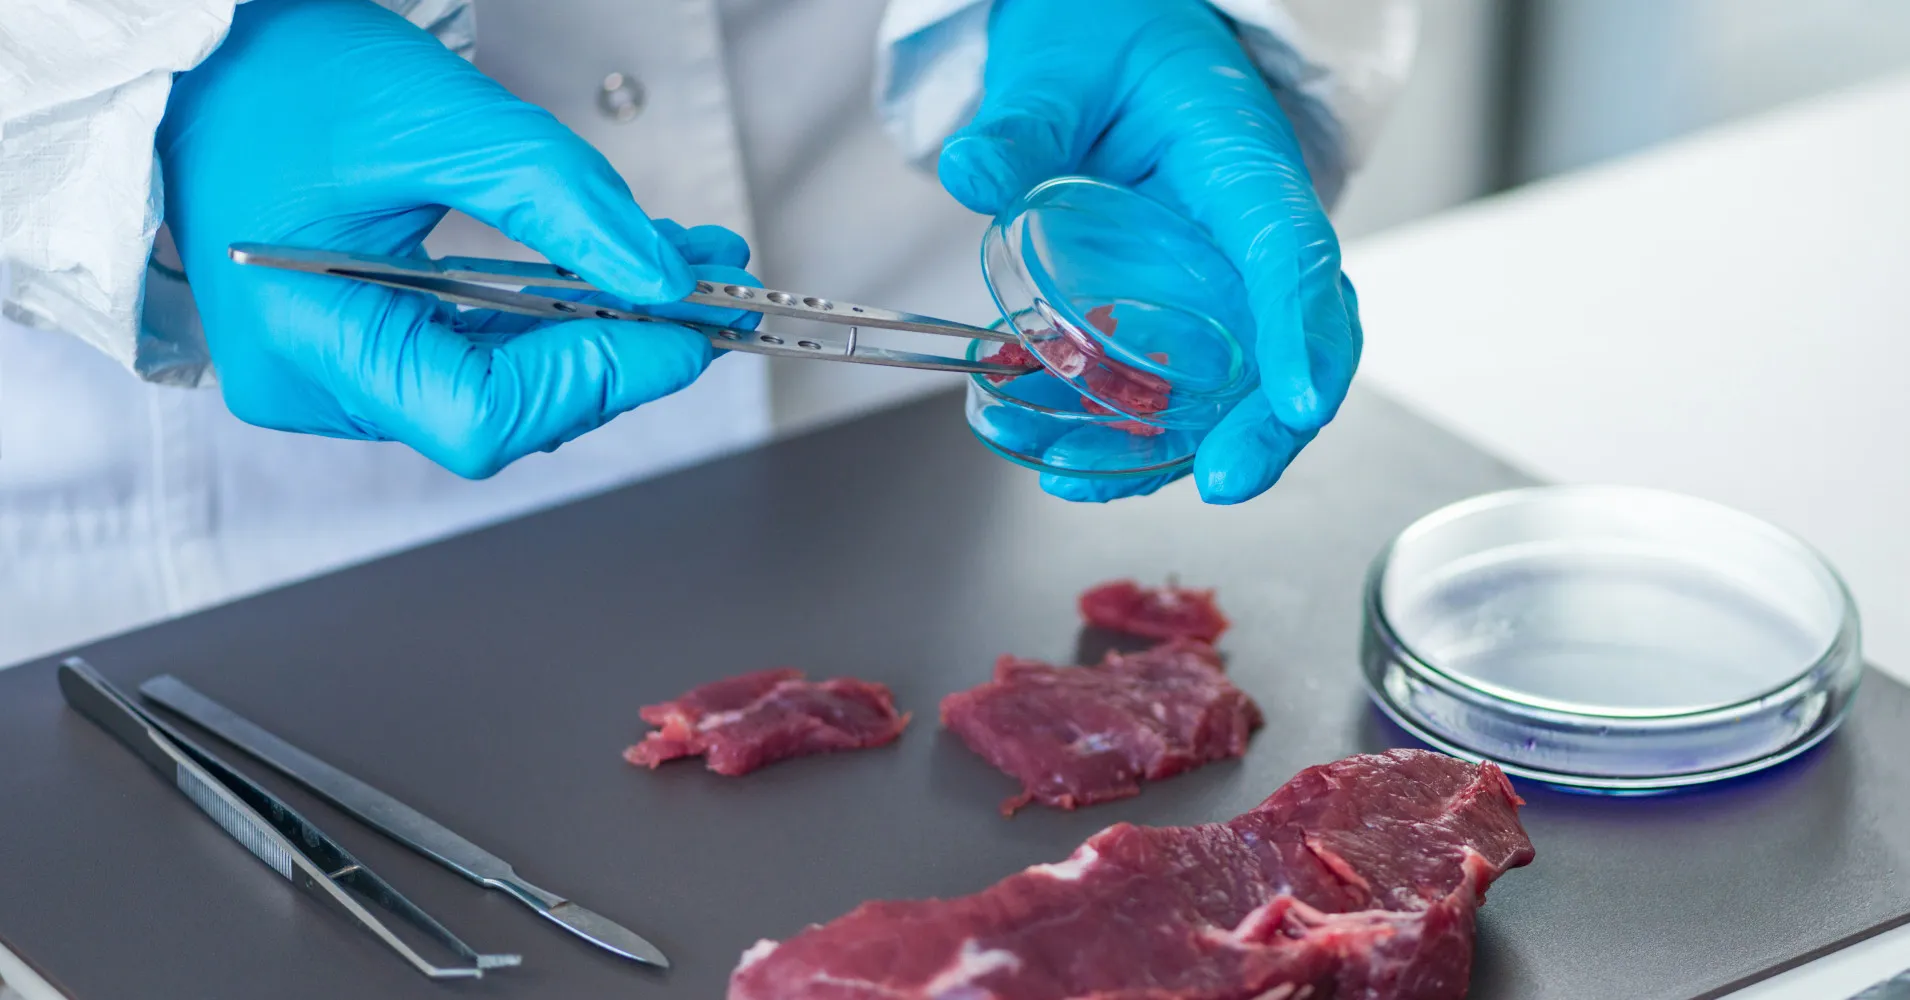 Il cibo coltivato in laboratorio è pericoloso, afferma il ministro italiano